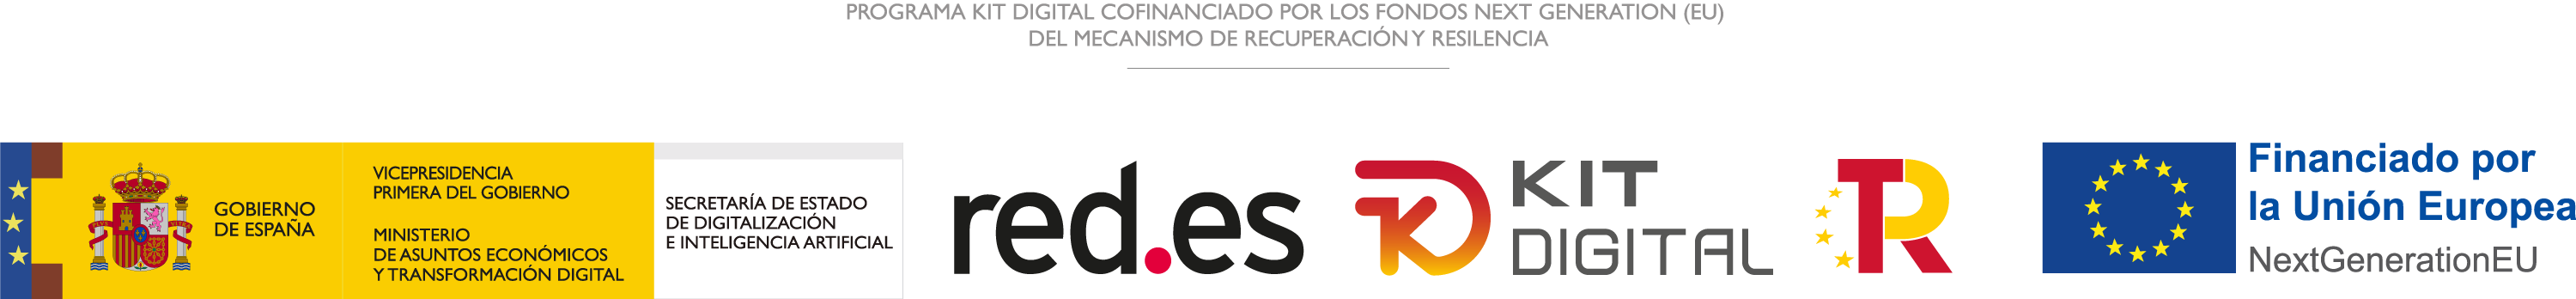 Publicidad del Programa Kit Digital y logo de agentes digitalizadores